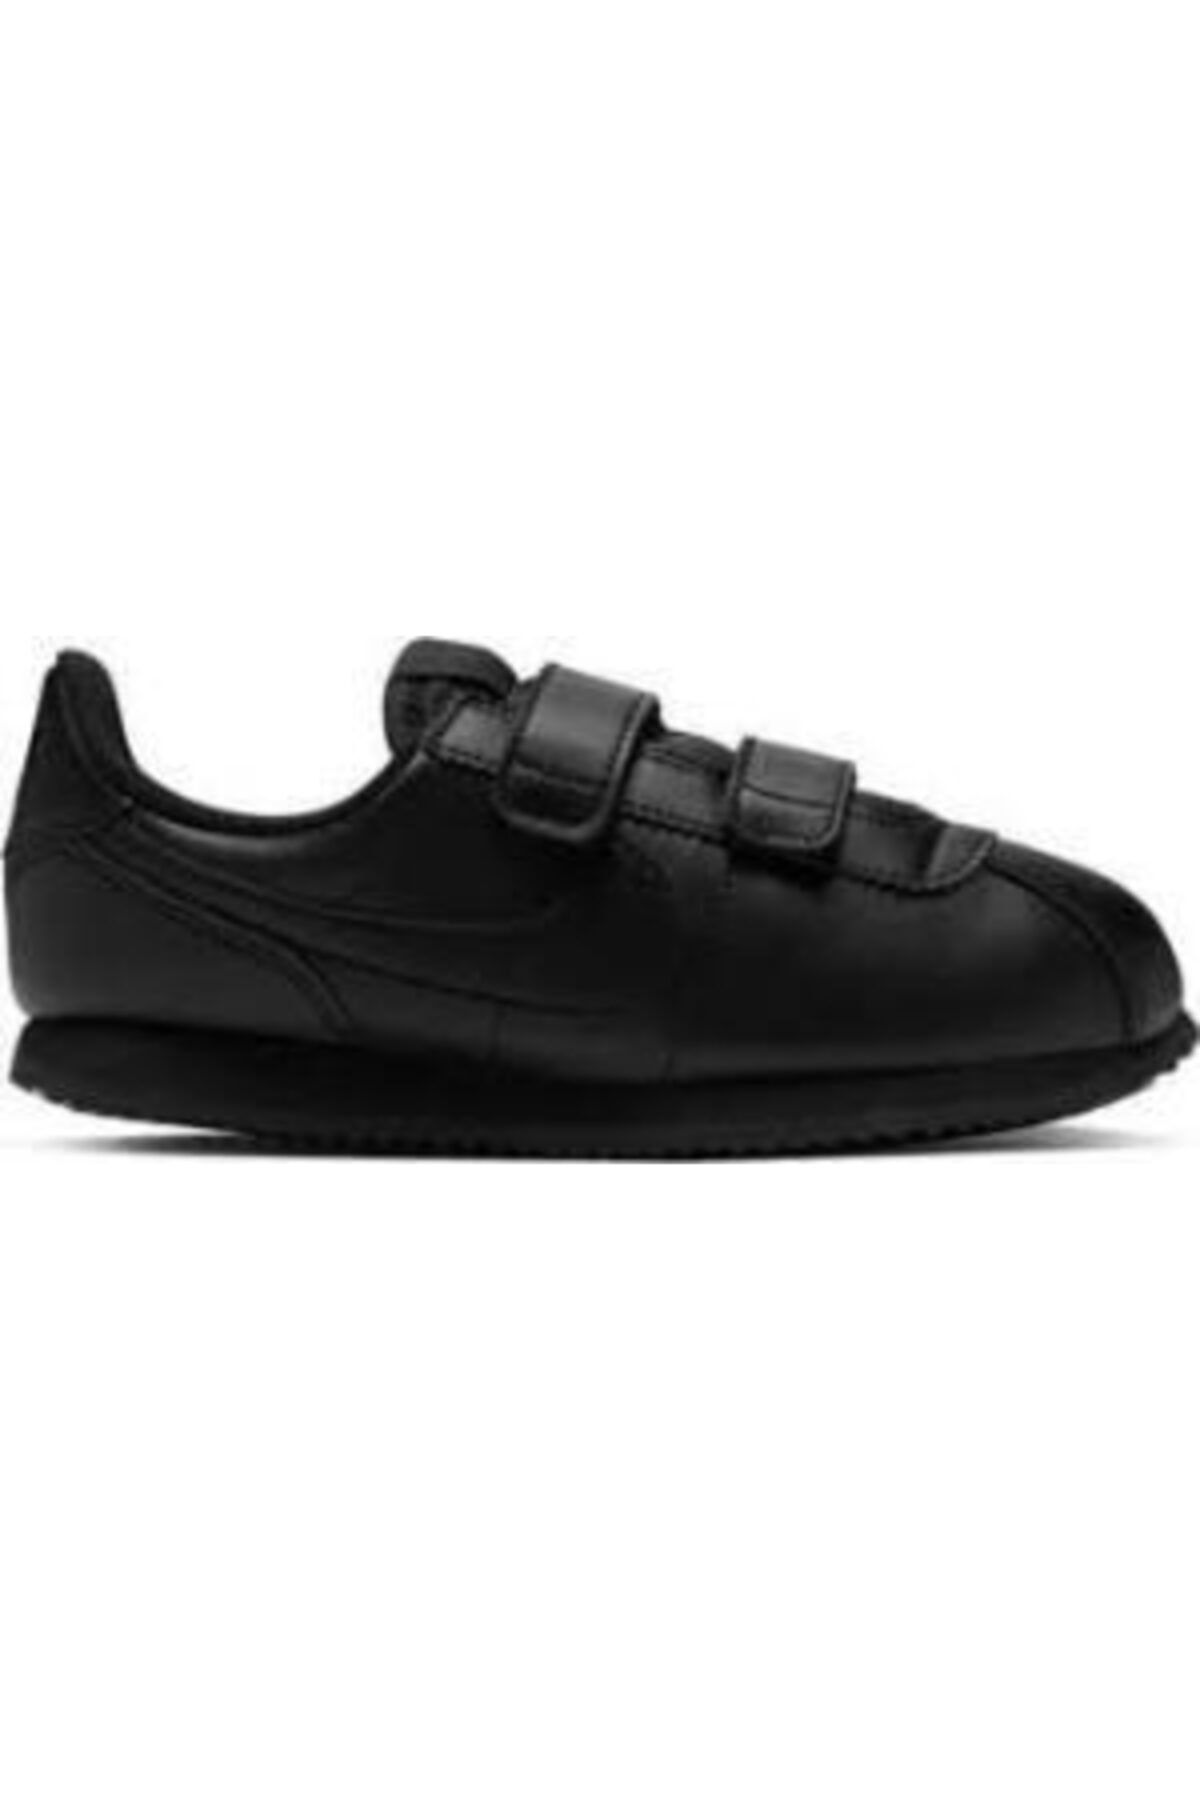 Nike Erkek Çocuk Siyah Cortez Basic Spor Ayakkabı Sl 904767 004